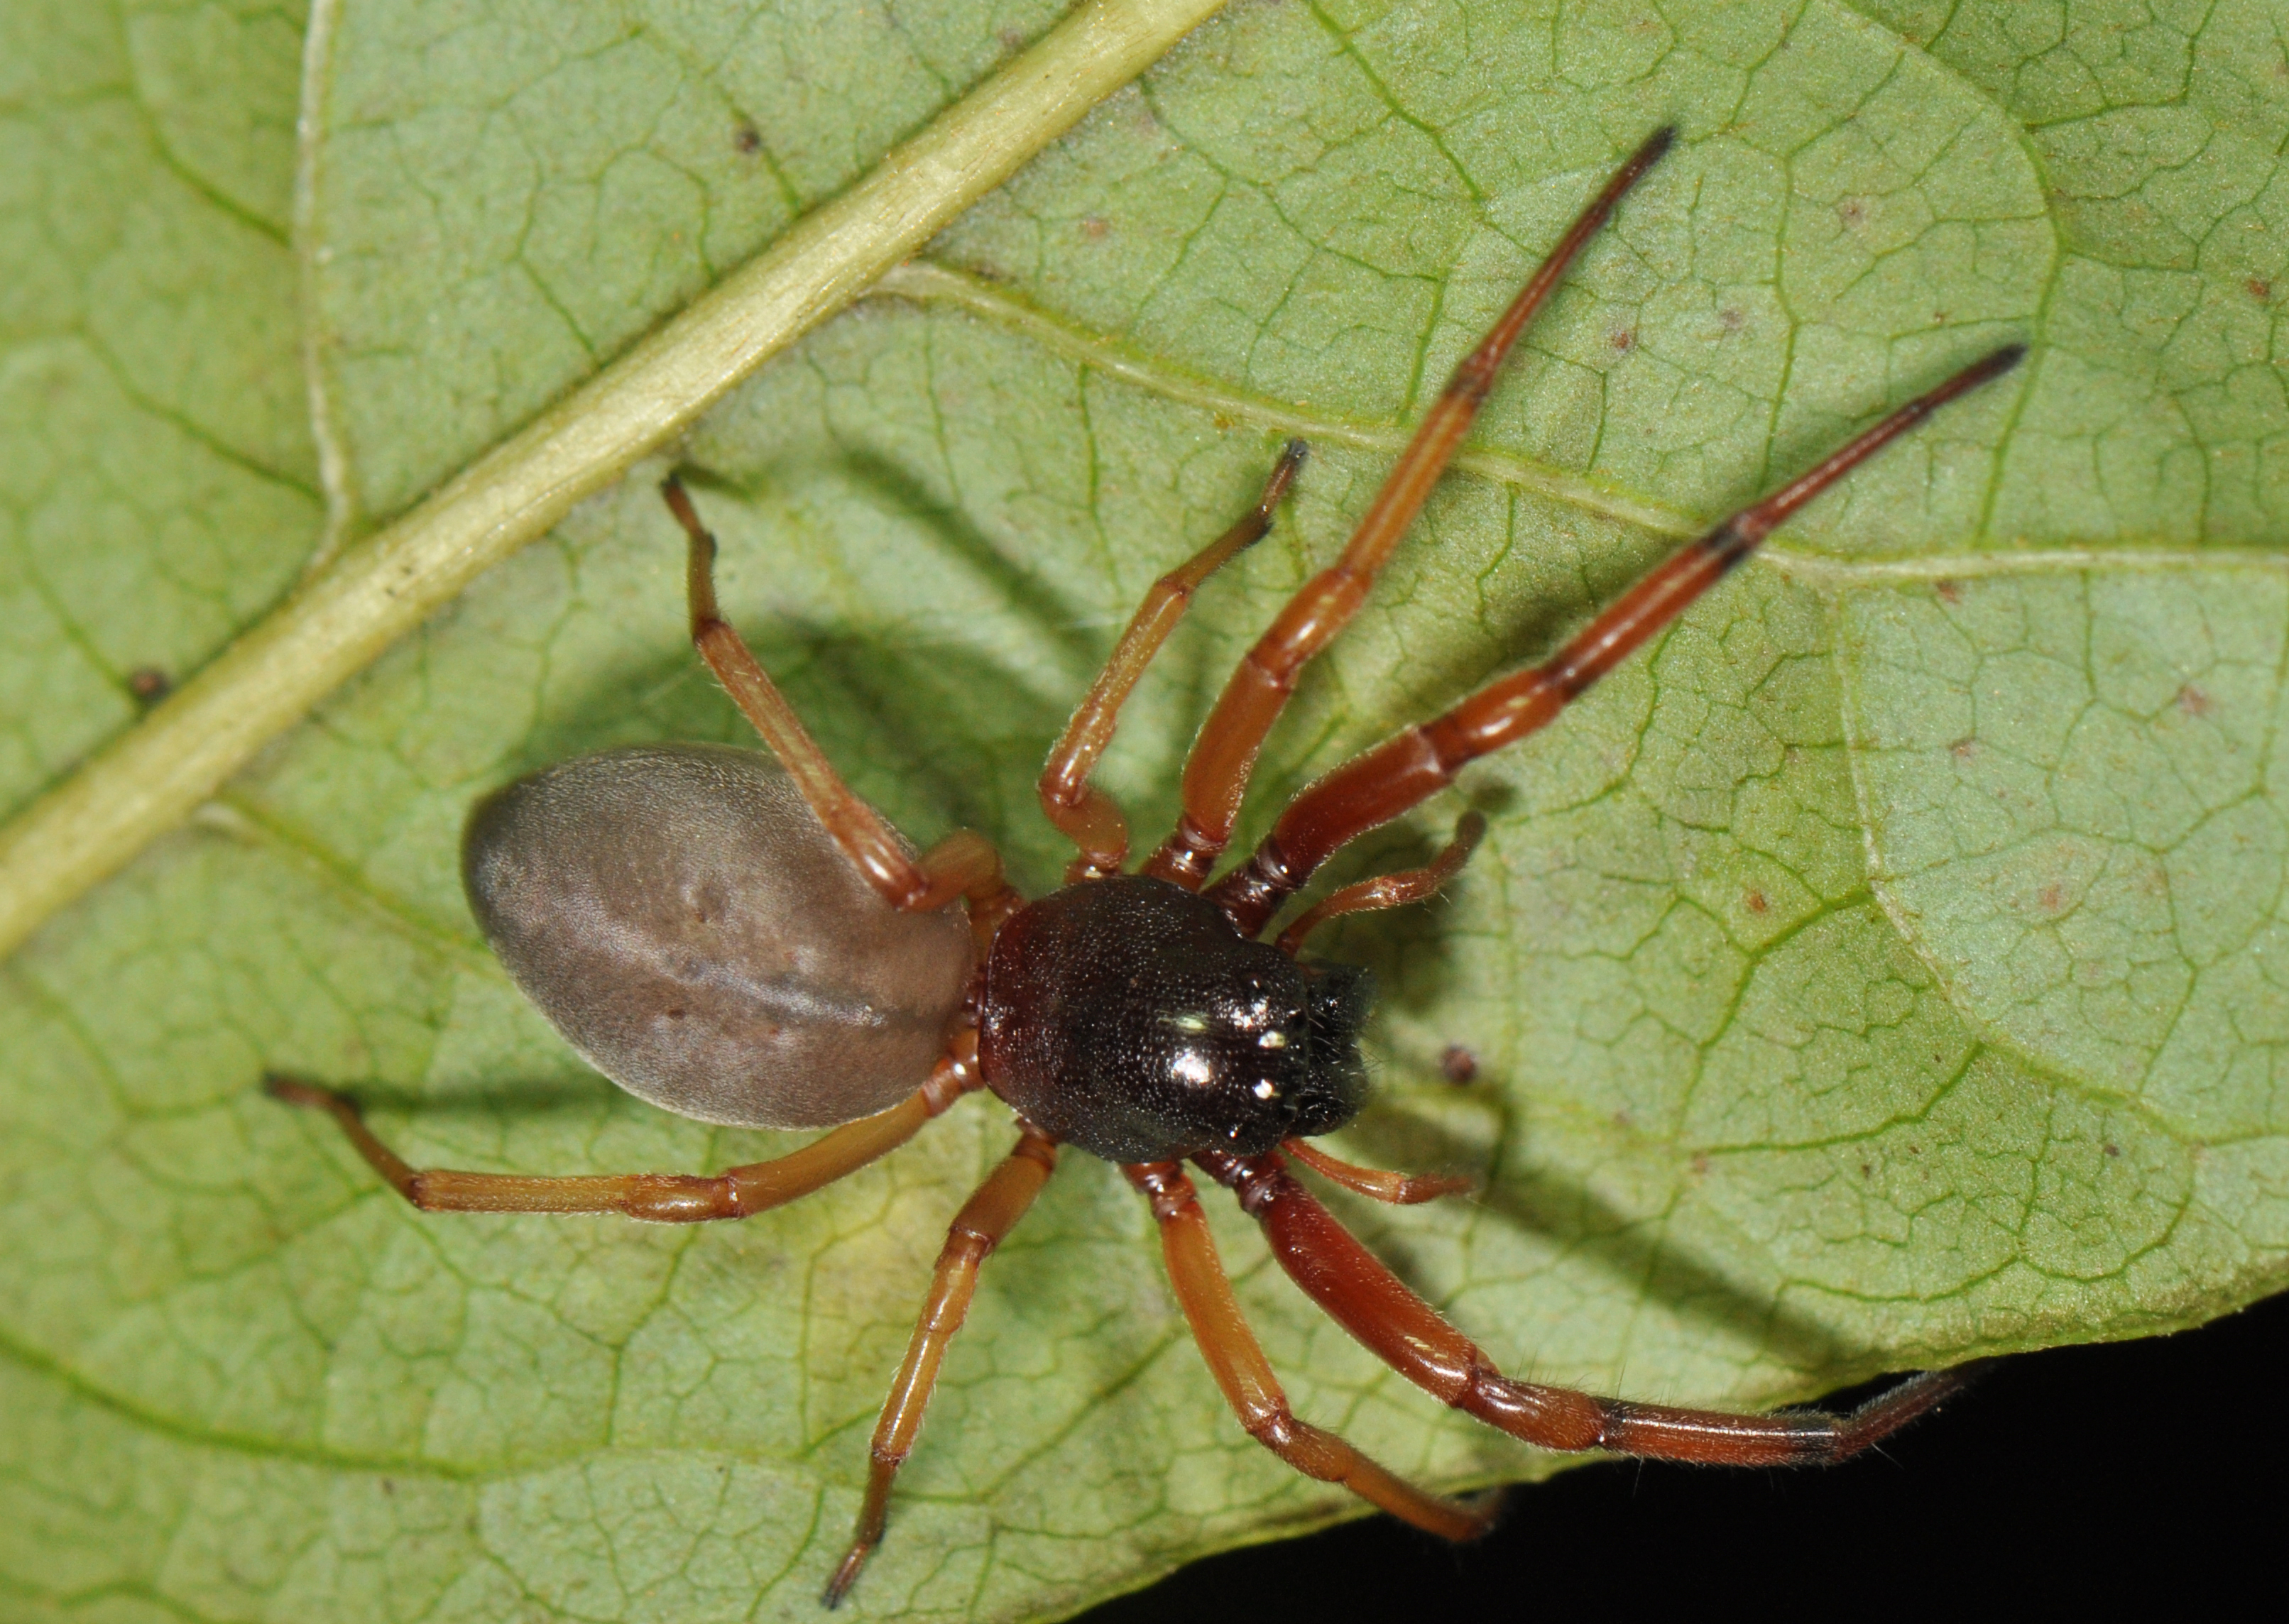 Ohio's biting spiders